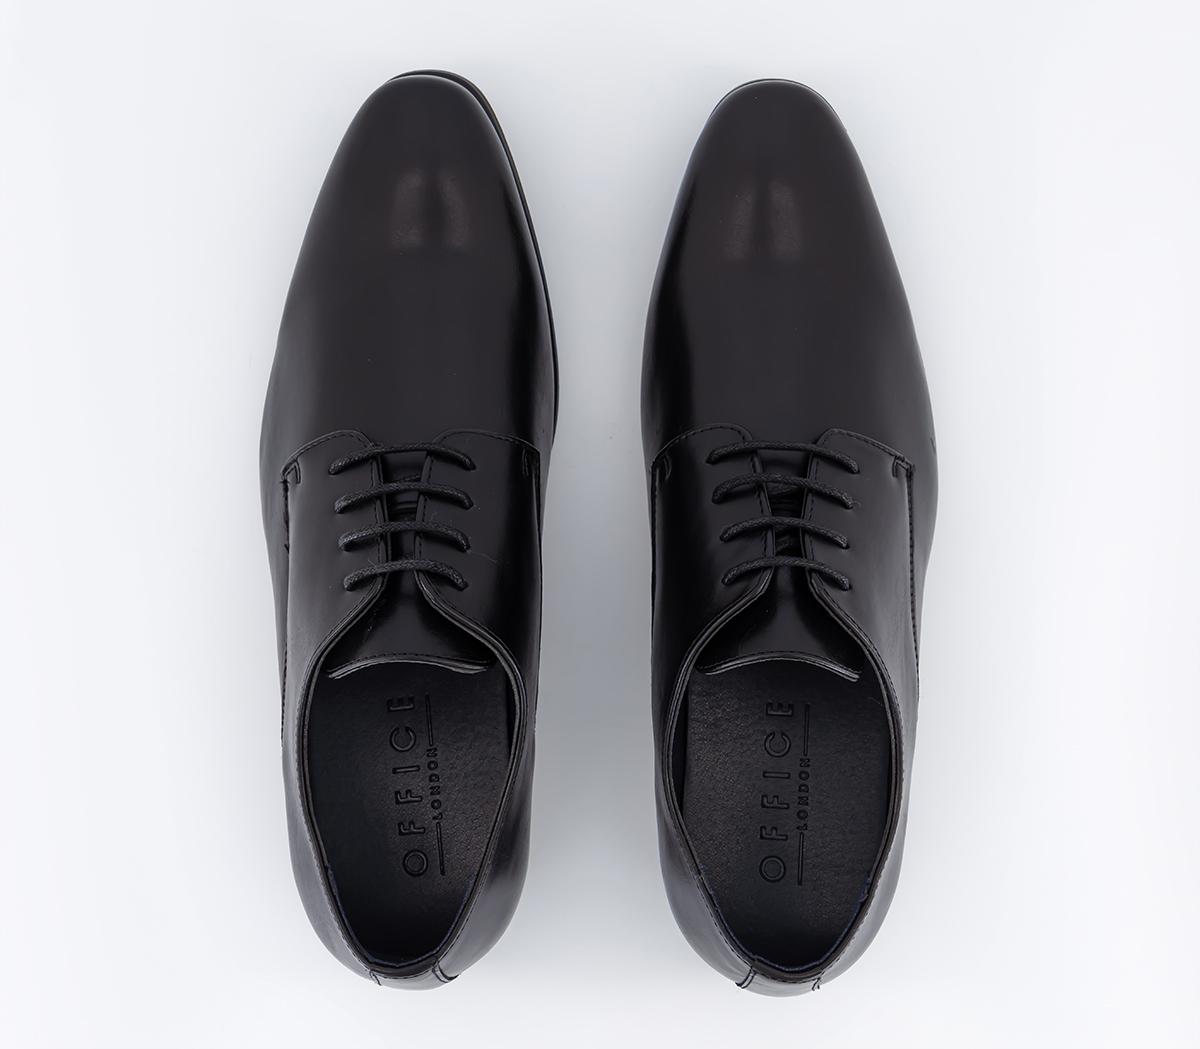 OFFICE Monroe Derby Shoes Black - Men’s Smart Shoes